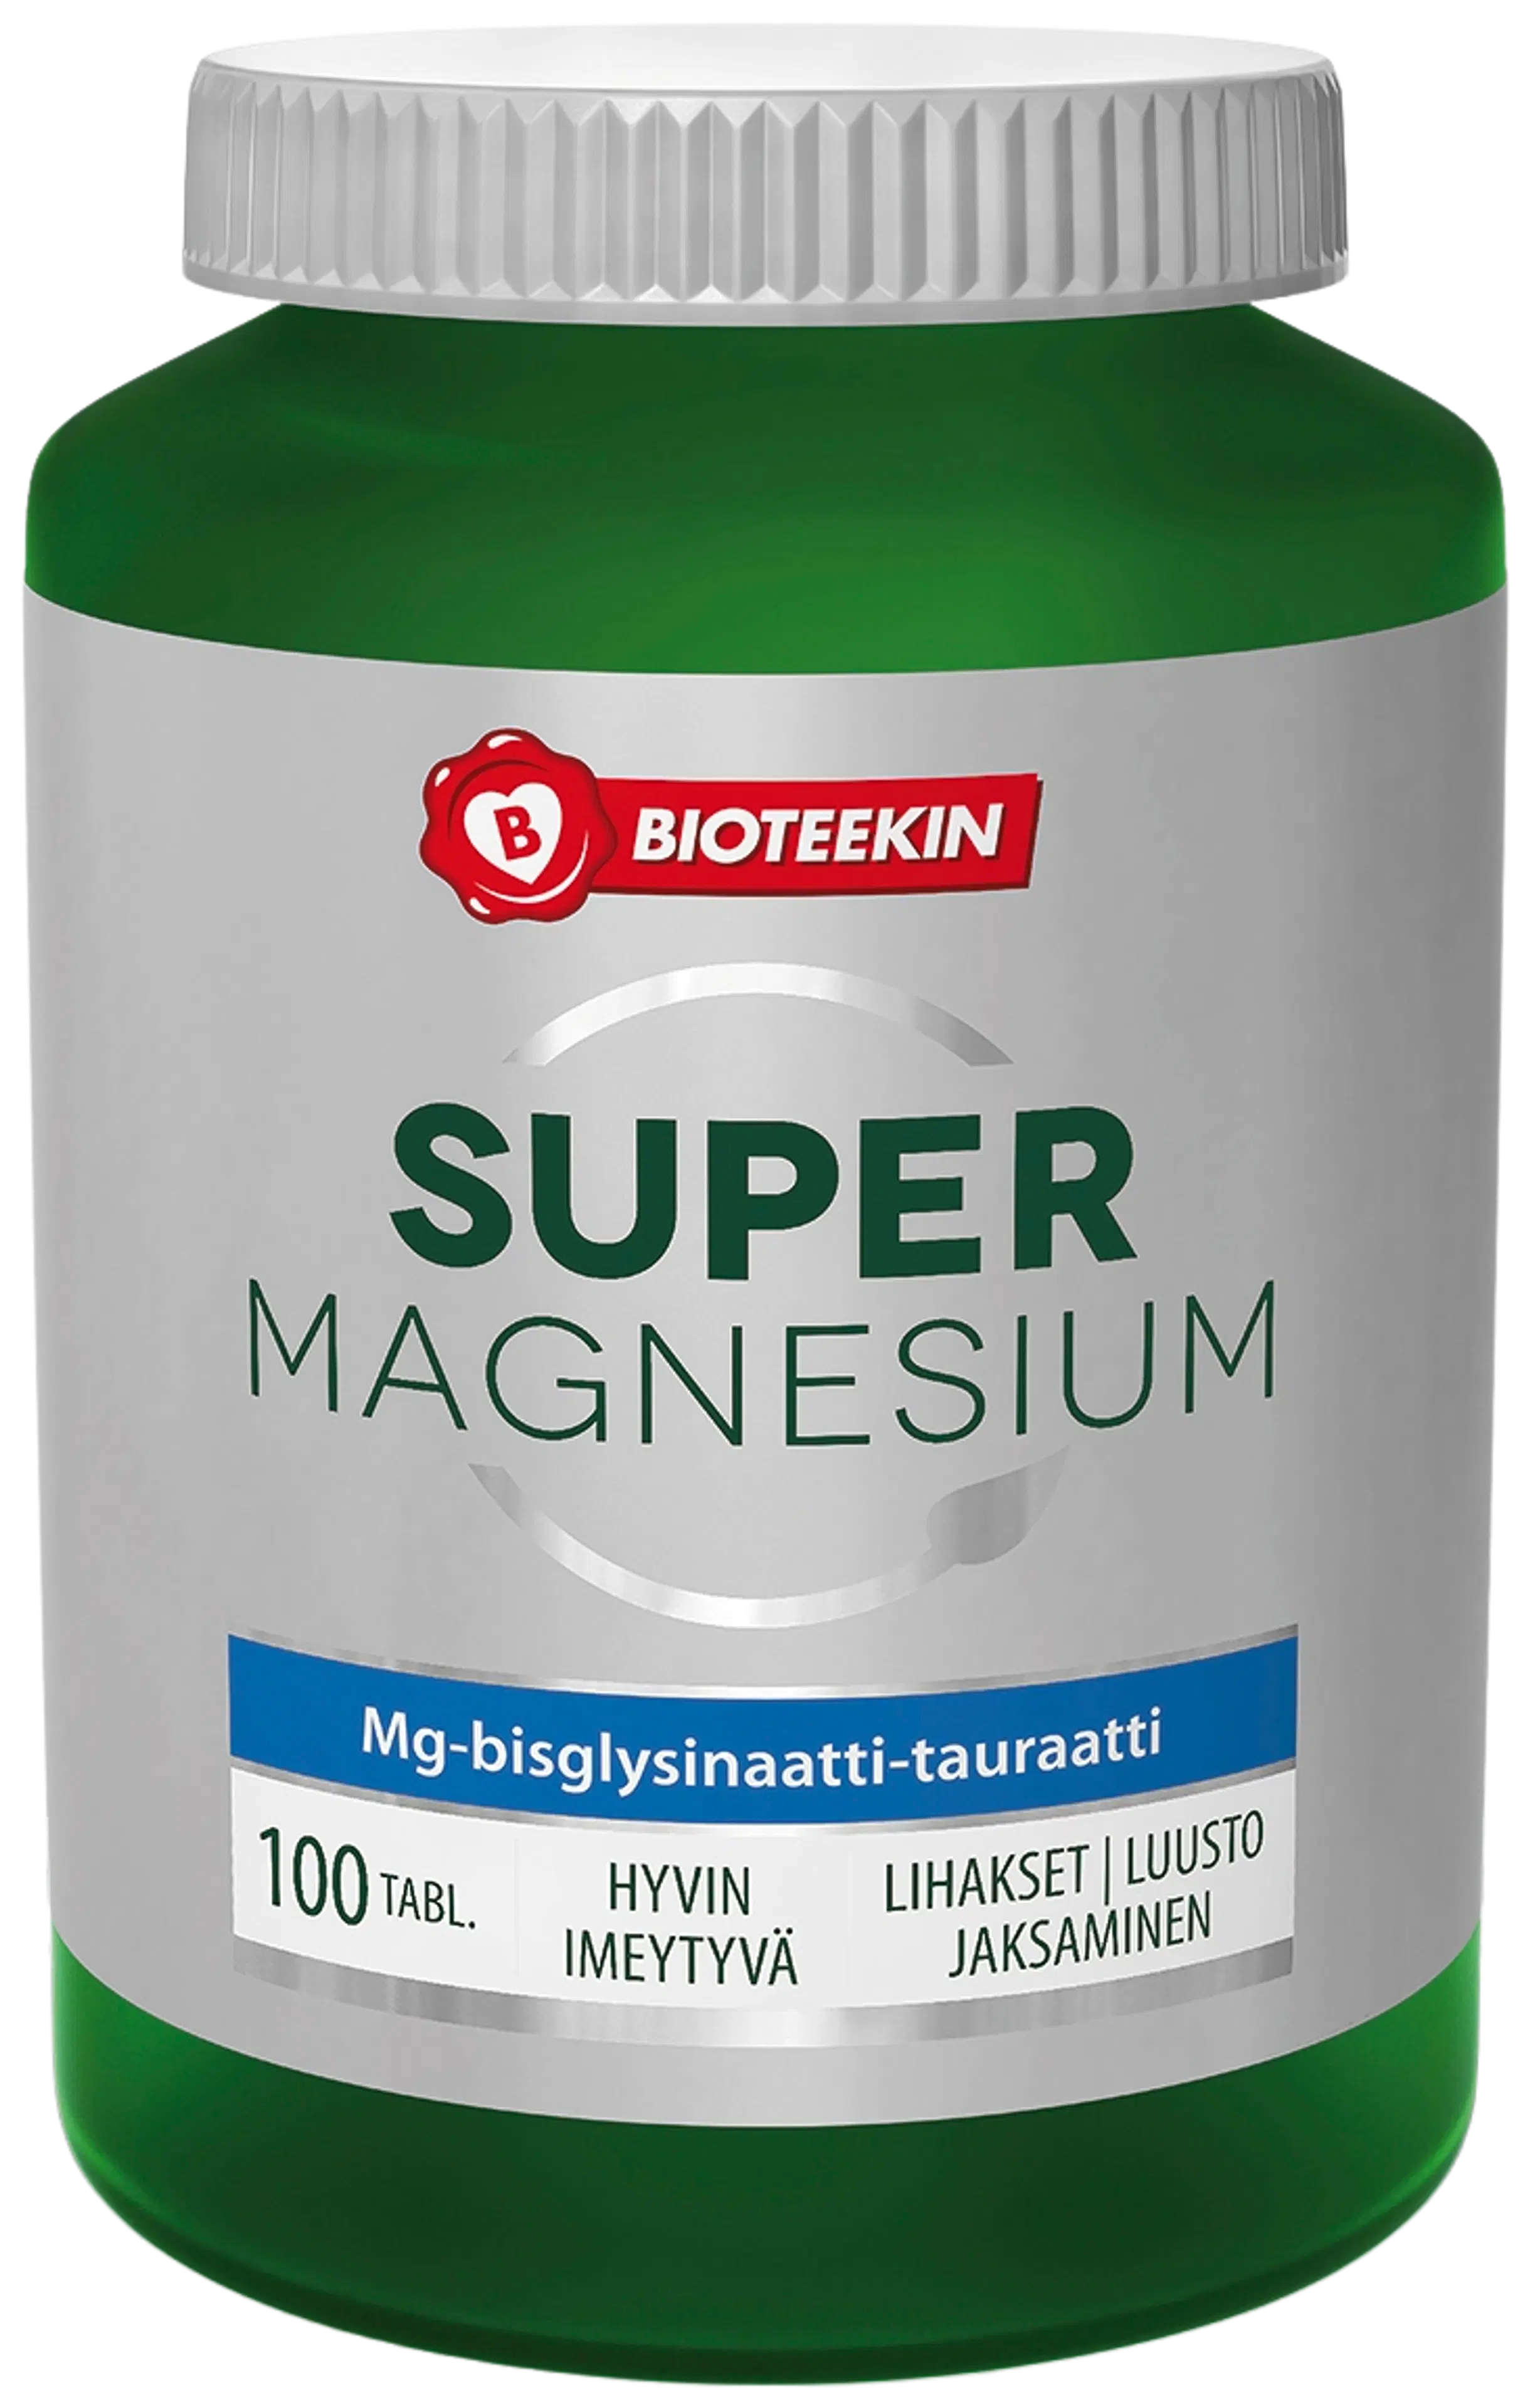 Bioteekki Super Magnesium ravintolisä 100 tabl.